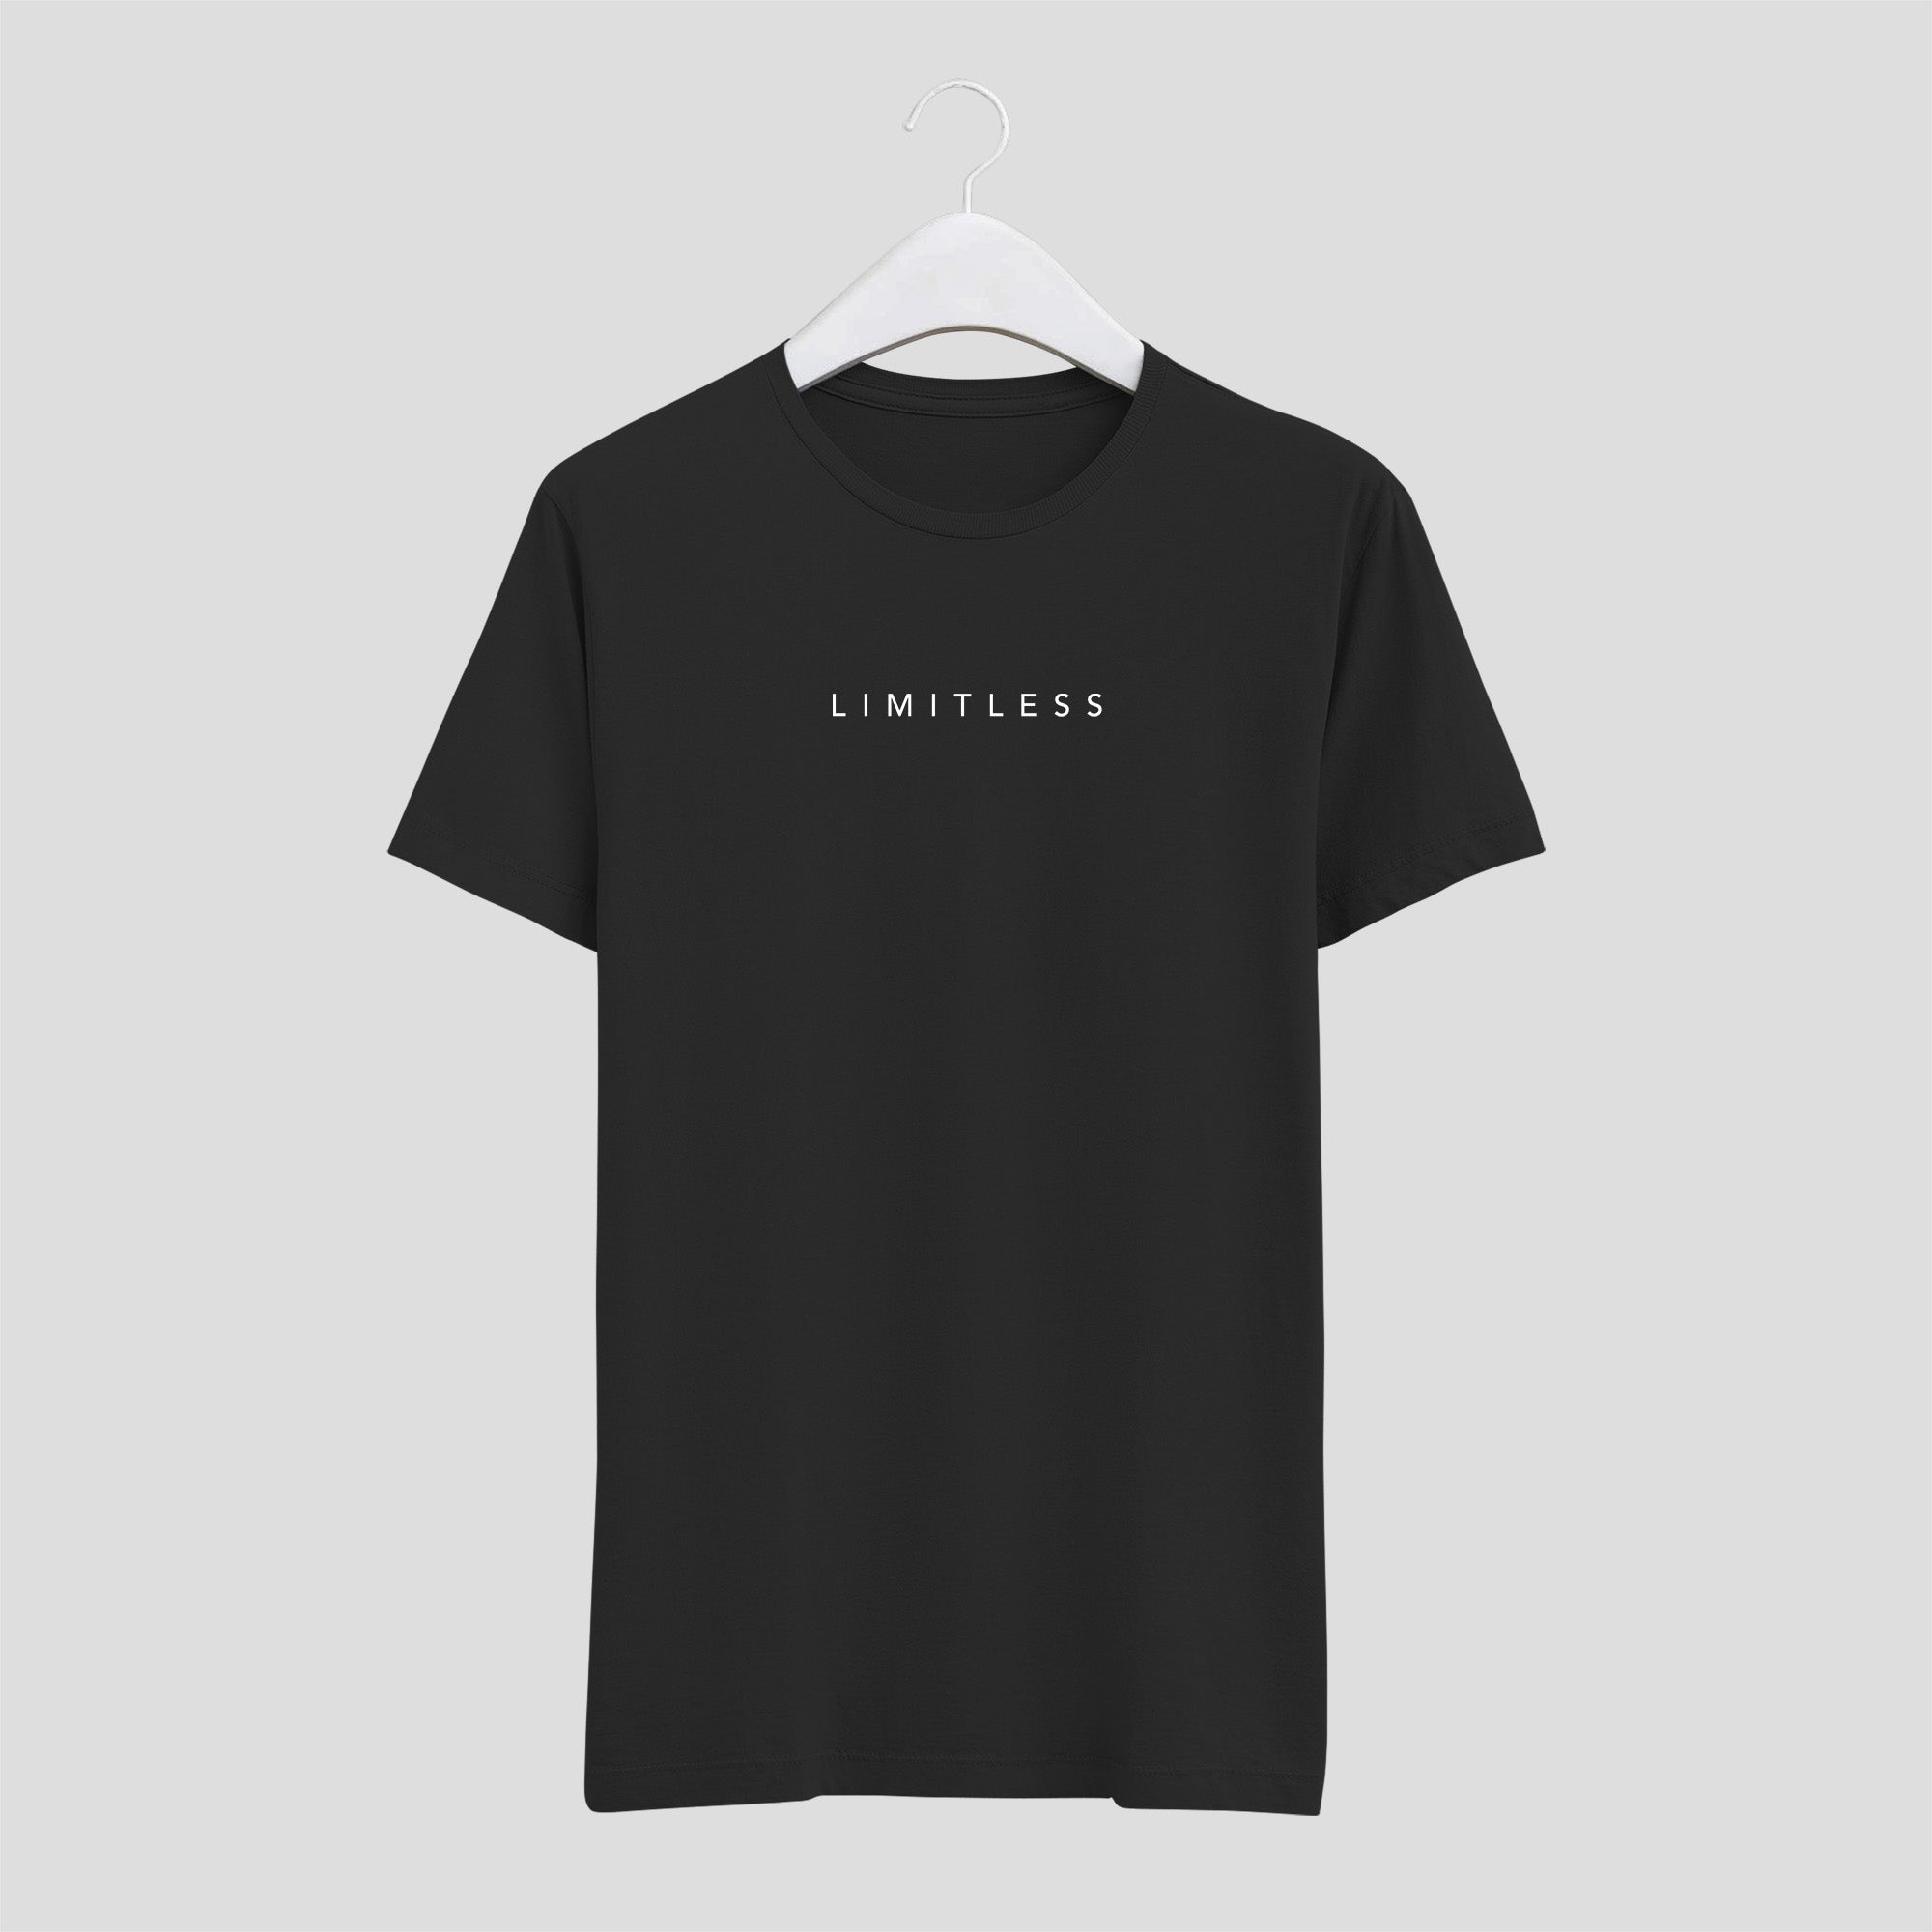 camiseta limitless sin límites minimalista hombre negra